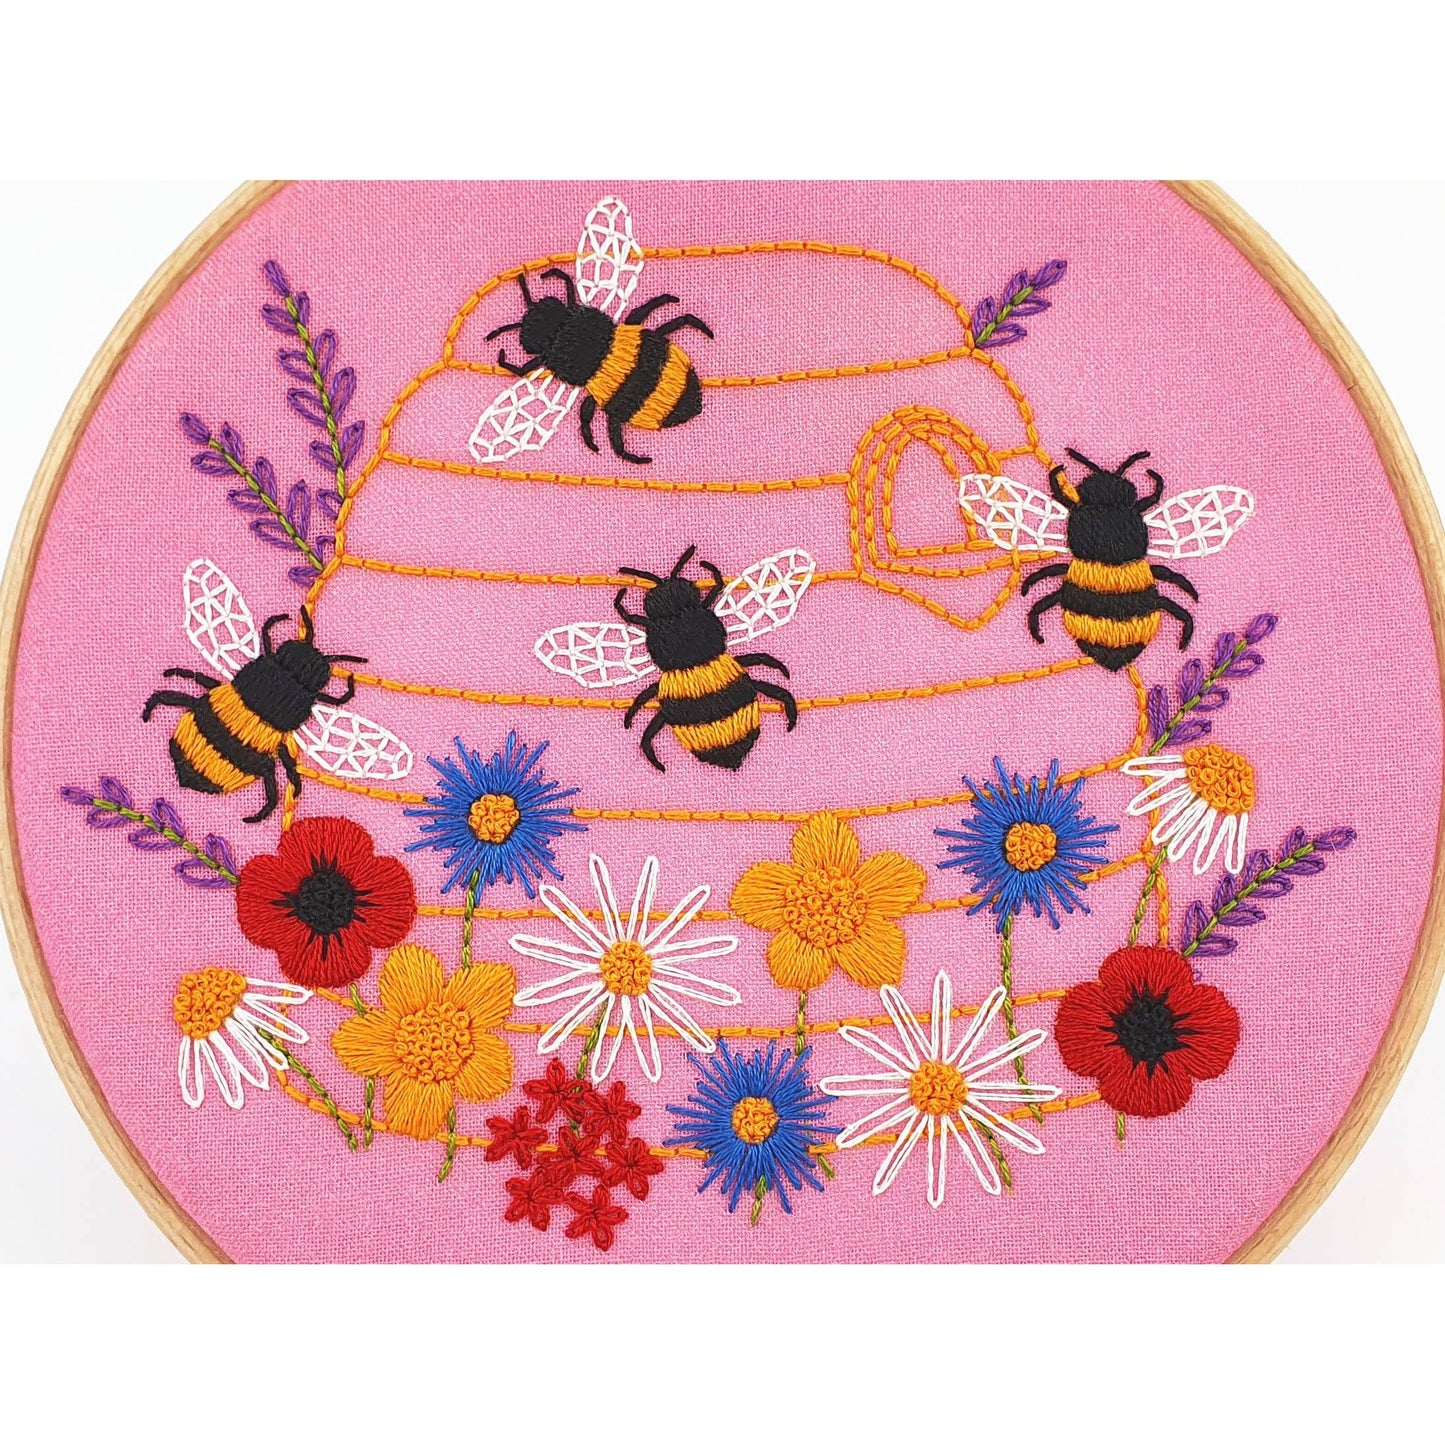 Honey Bees and Wildflowers Handmade Embroidery Kit Hoop